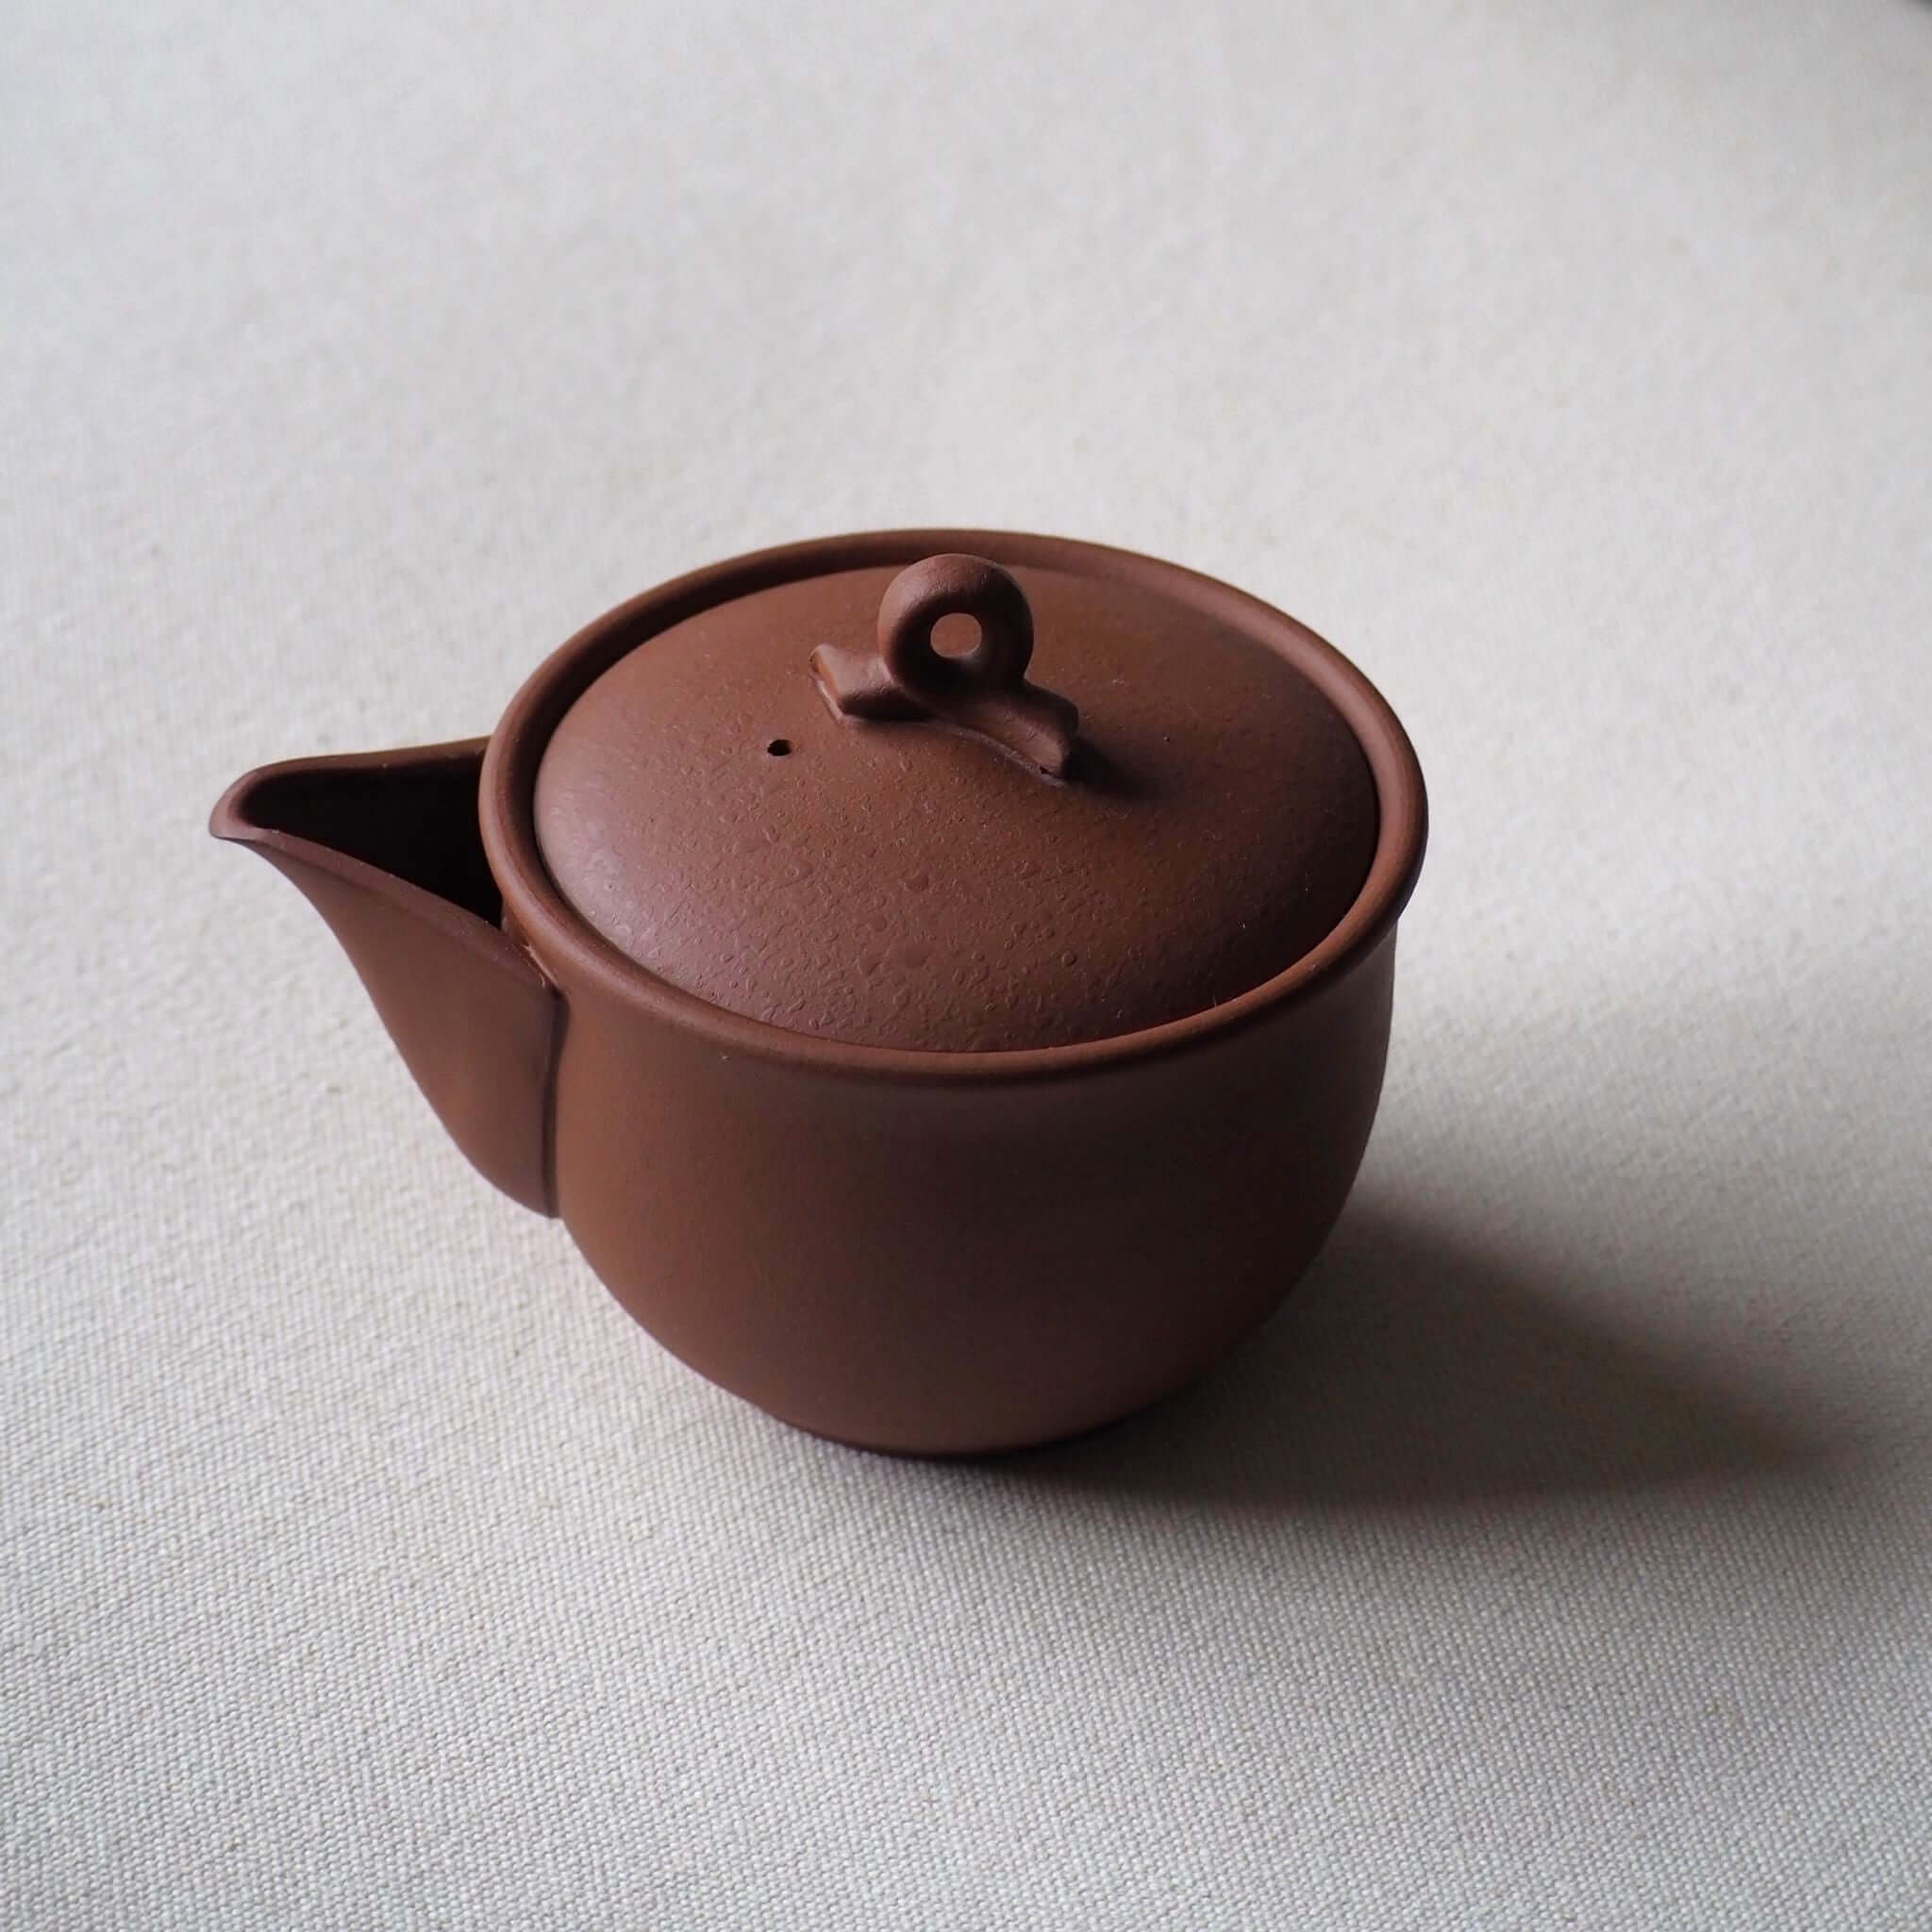 煎茶・緑茶向け手づくりの急須 ギフト・海外土産にもおすすめ – 煎茶 